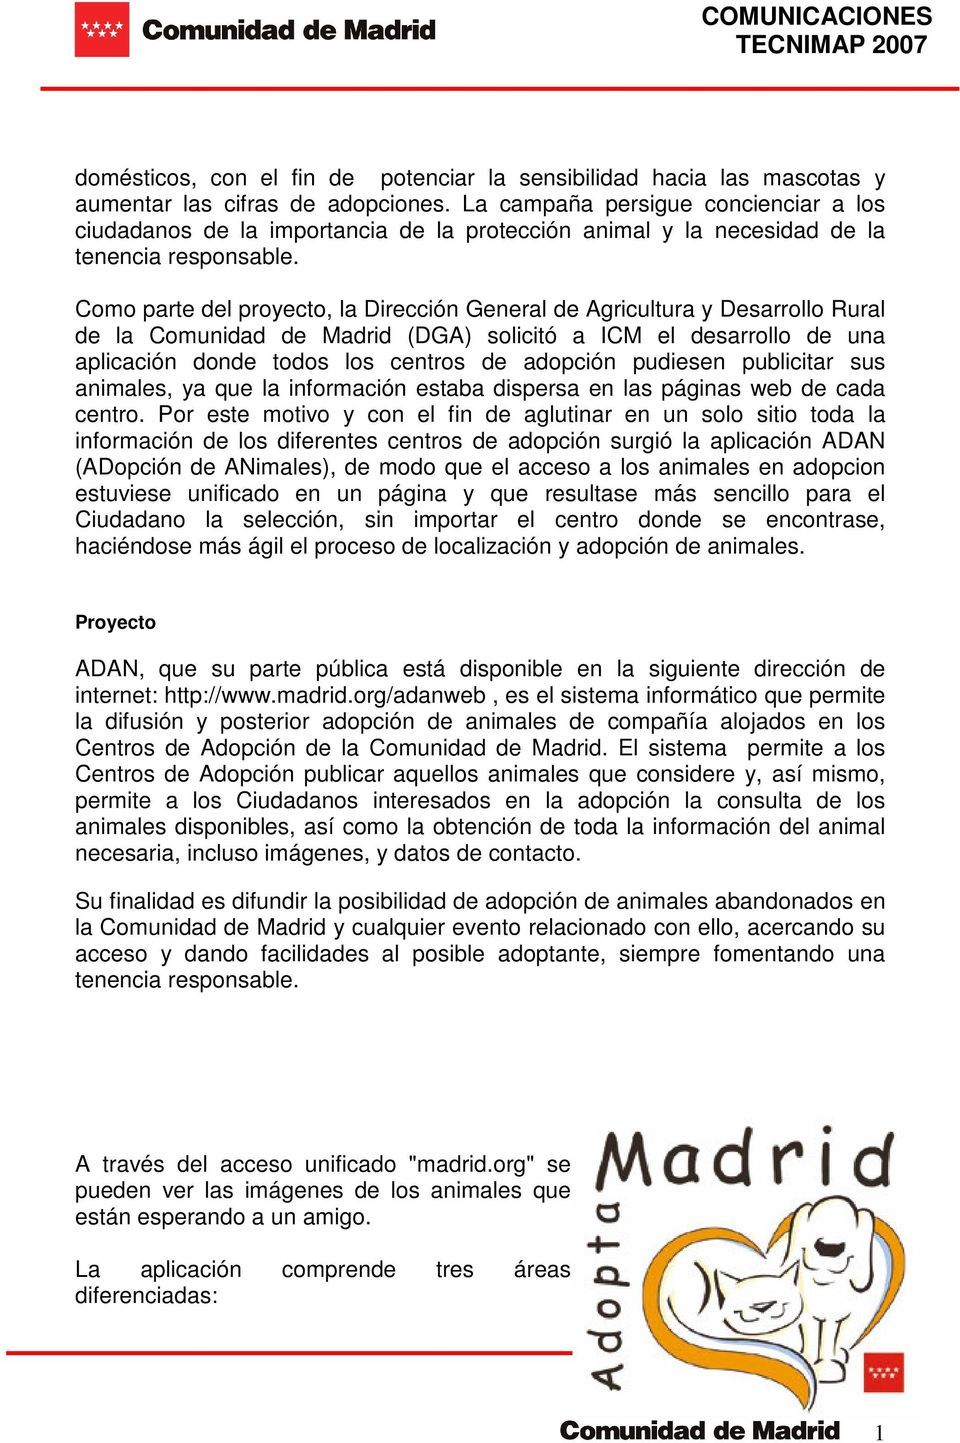 Como parte del proyecto, la Dirección General de Agricultura y Desarrollo Rural de la Comunidad de Madrid (DGA) solicitó a ICM el desarrollo de una aplicación donde todos los centros de adopción